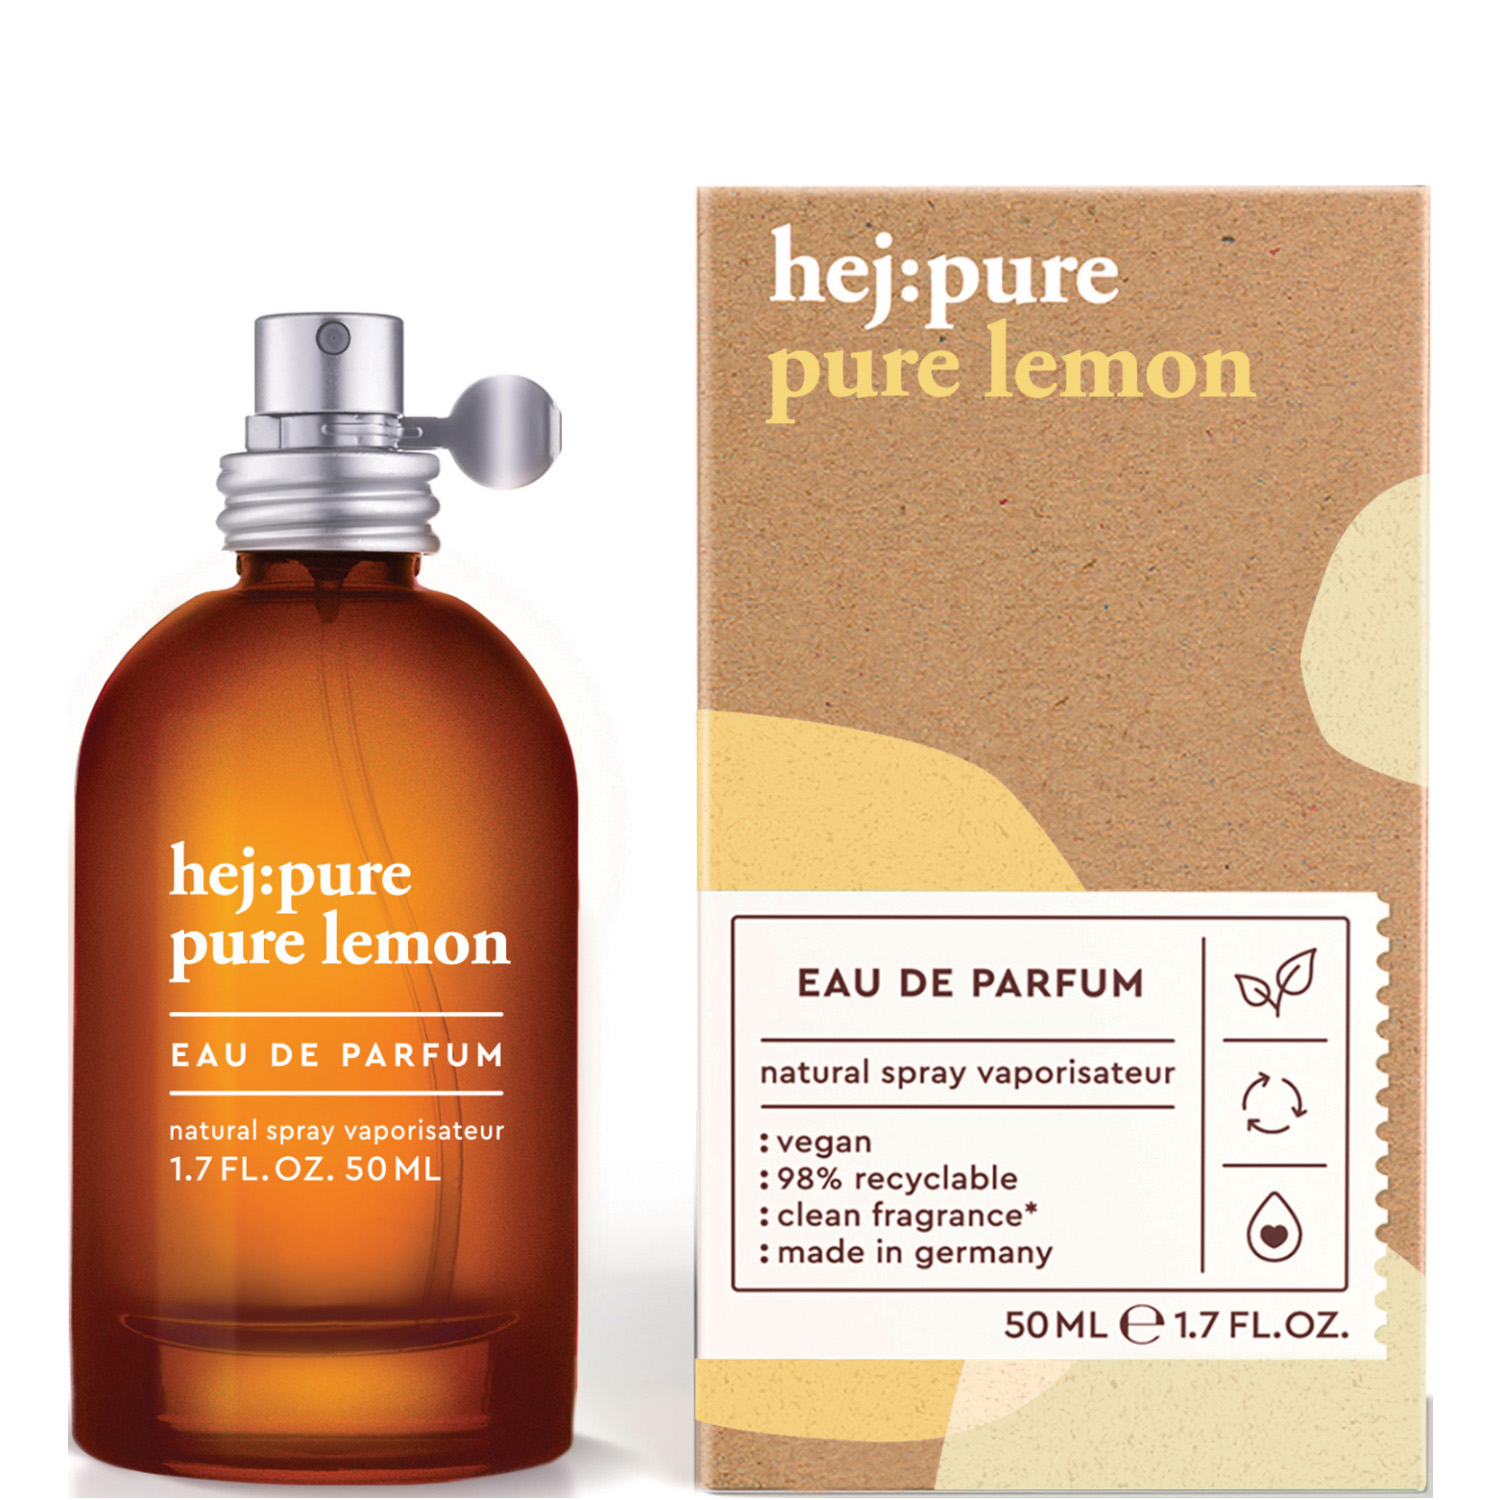 hej:pure Pure Lemon Eau de Parfum 50ml